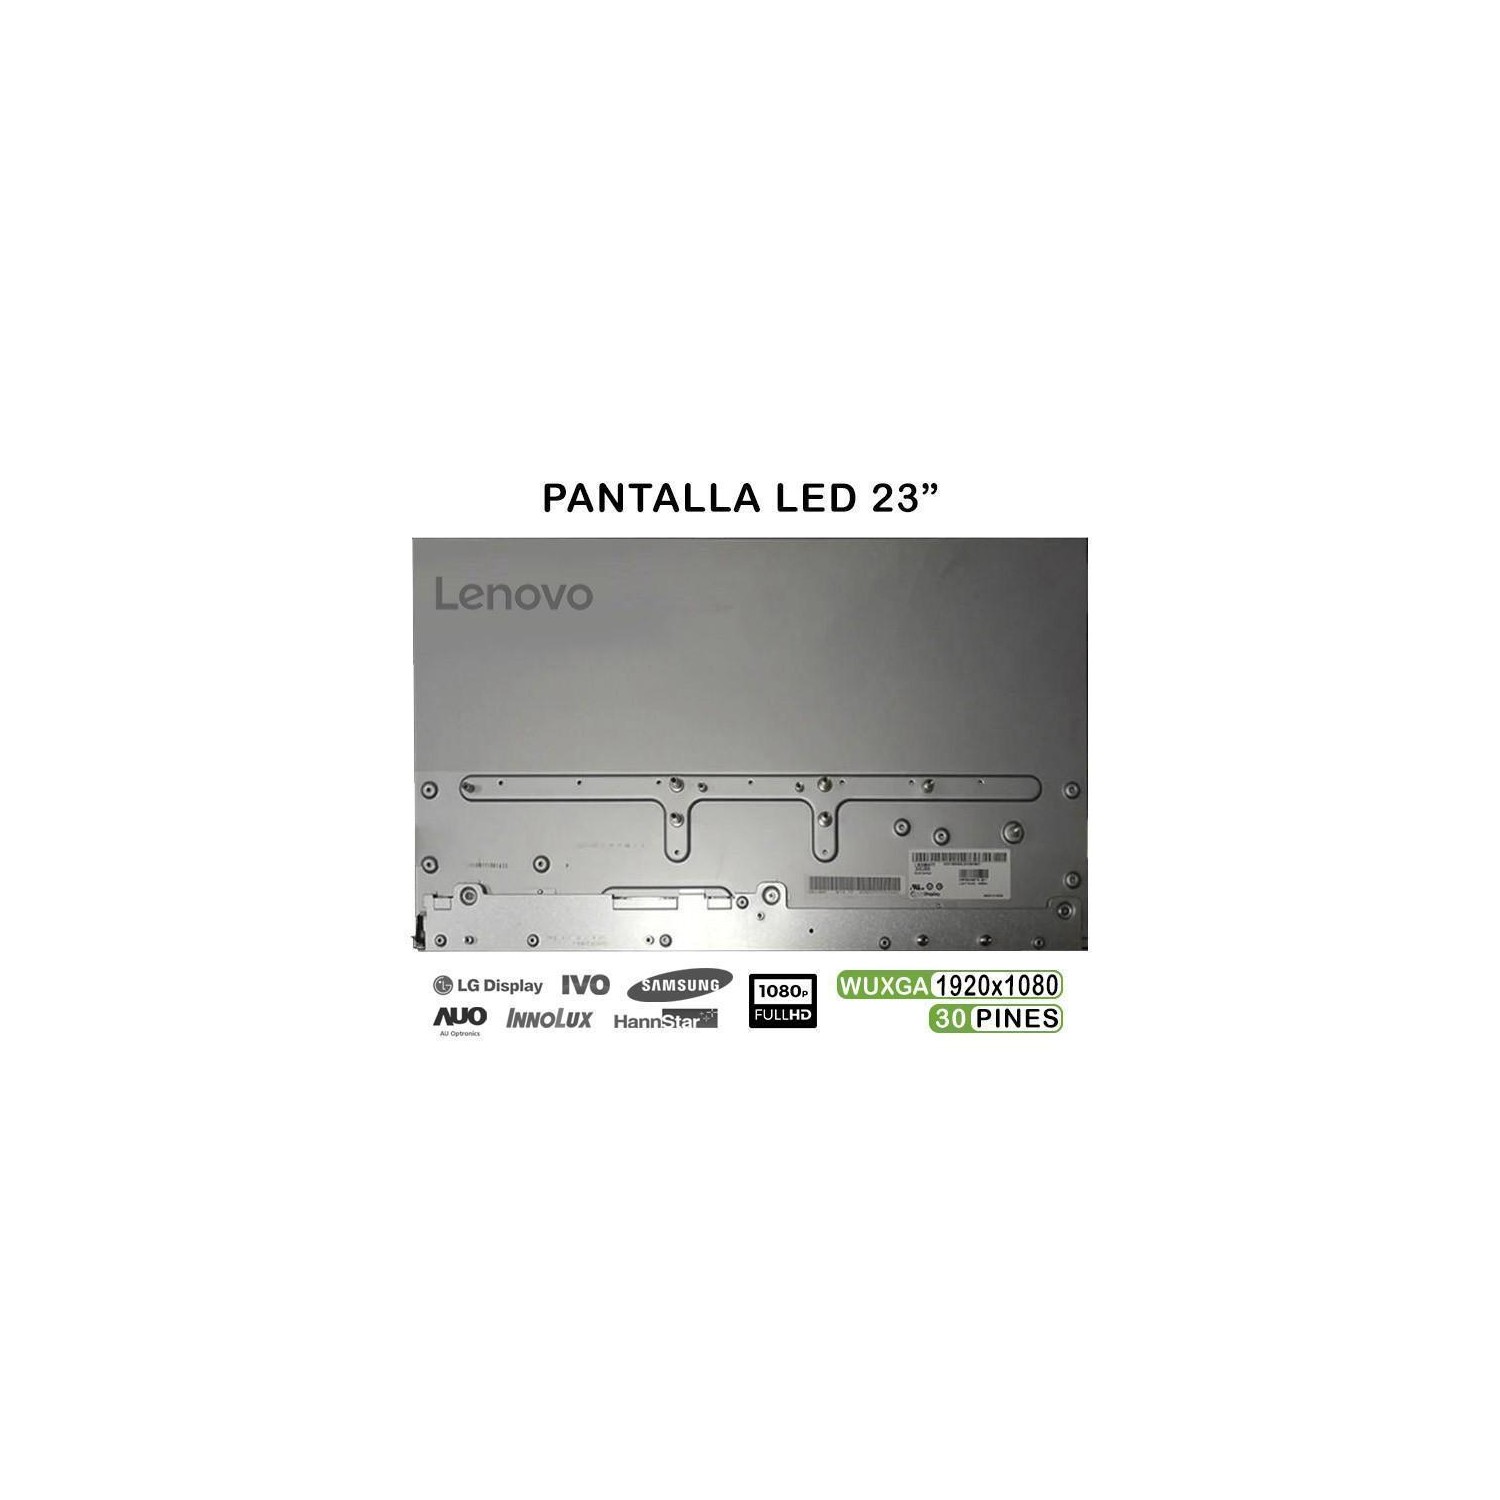 PANTALLA LED DE 23" PARA PORTÁTIL LENOVO IDEACENTRE 510S-23ISU LM230WF7-SSB2